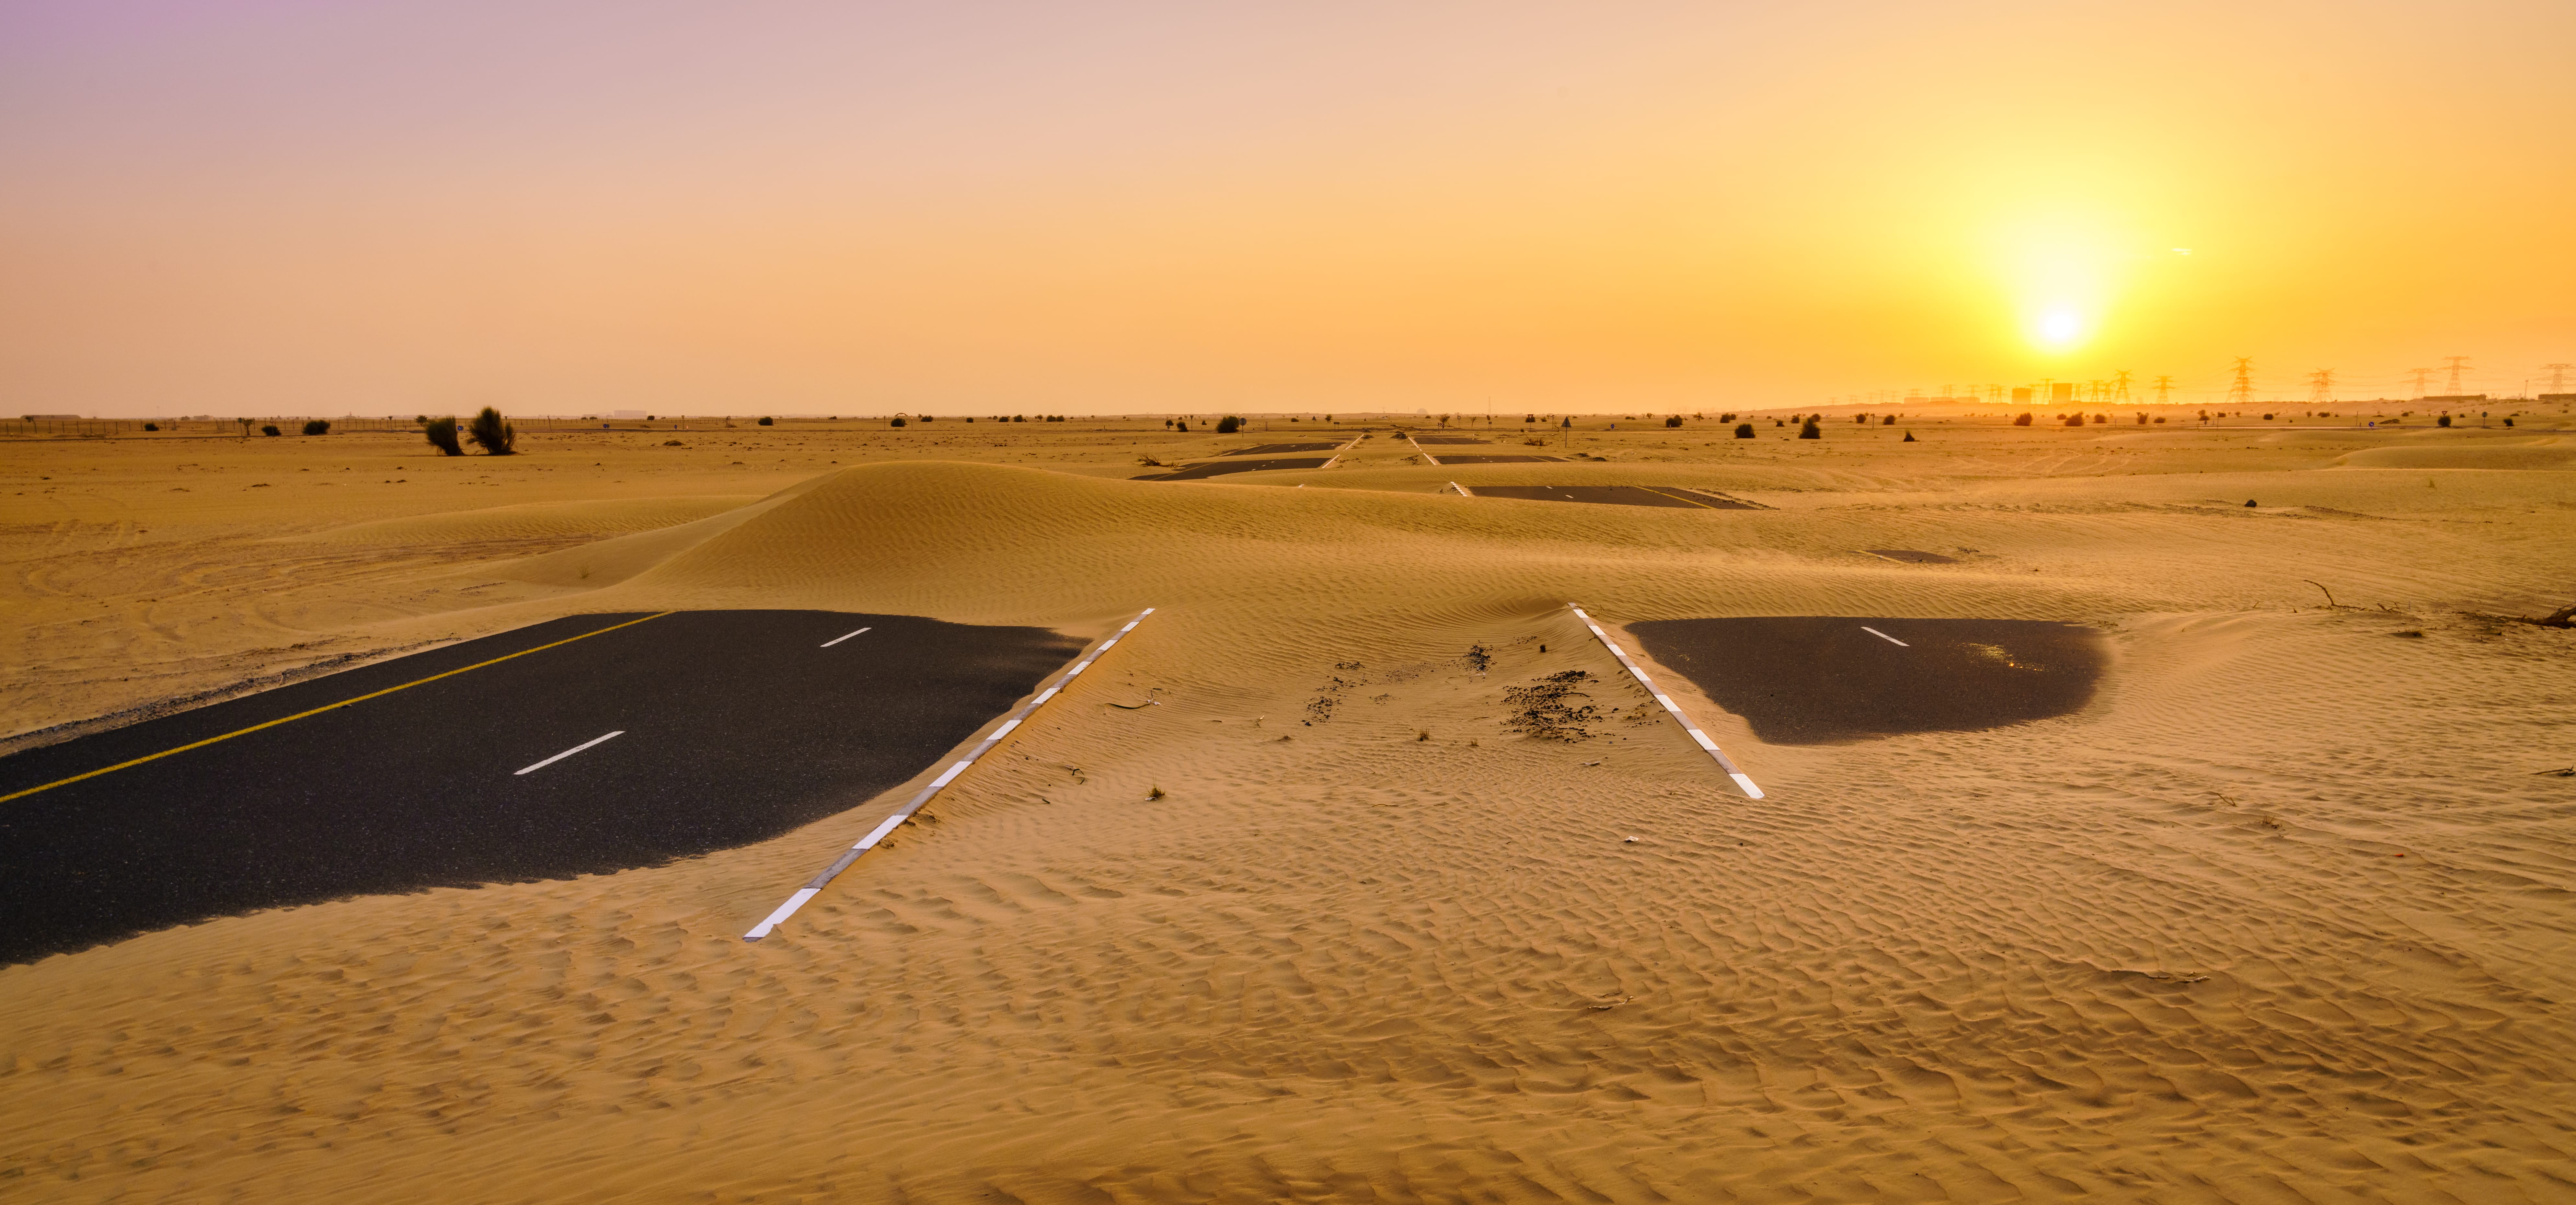 Пустыня станет отличной декорацией для фотосессии